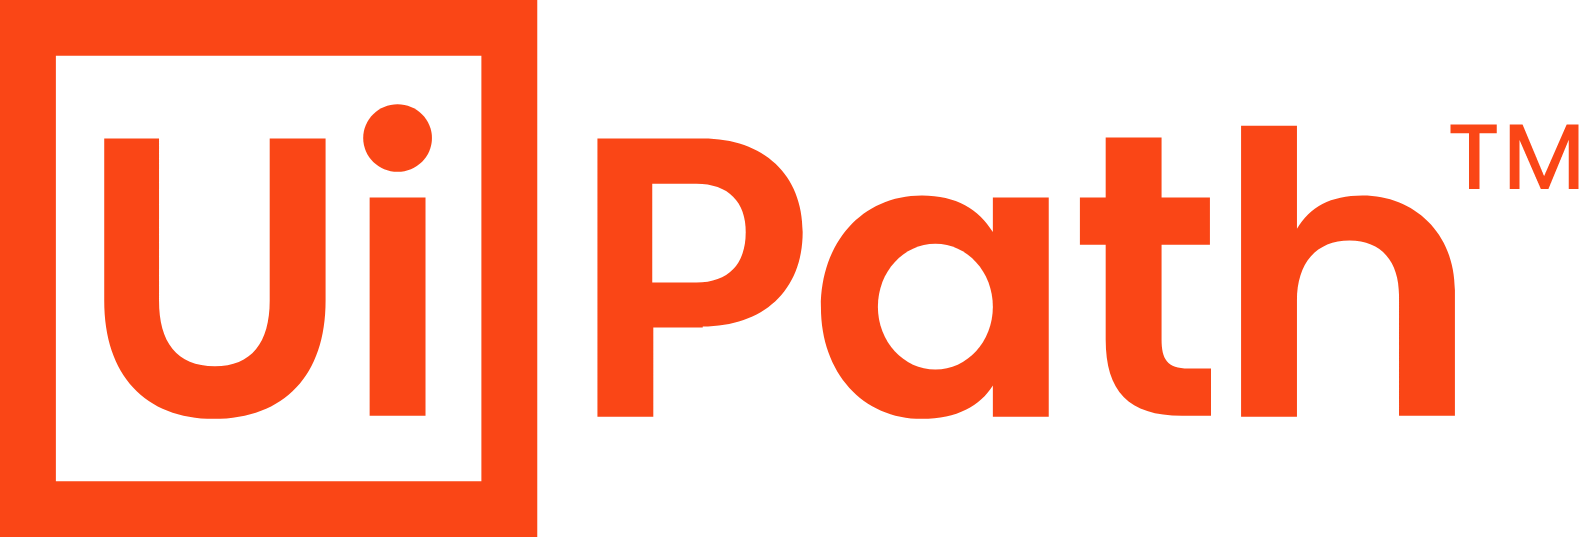 path logo png